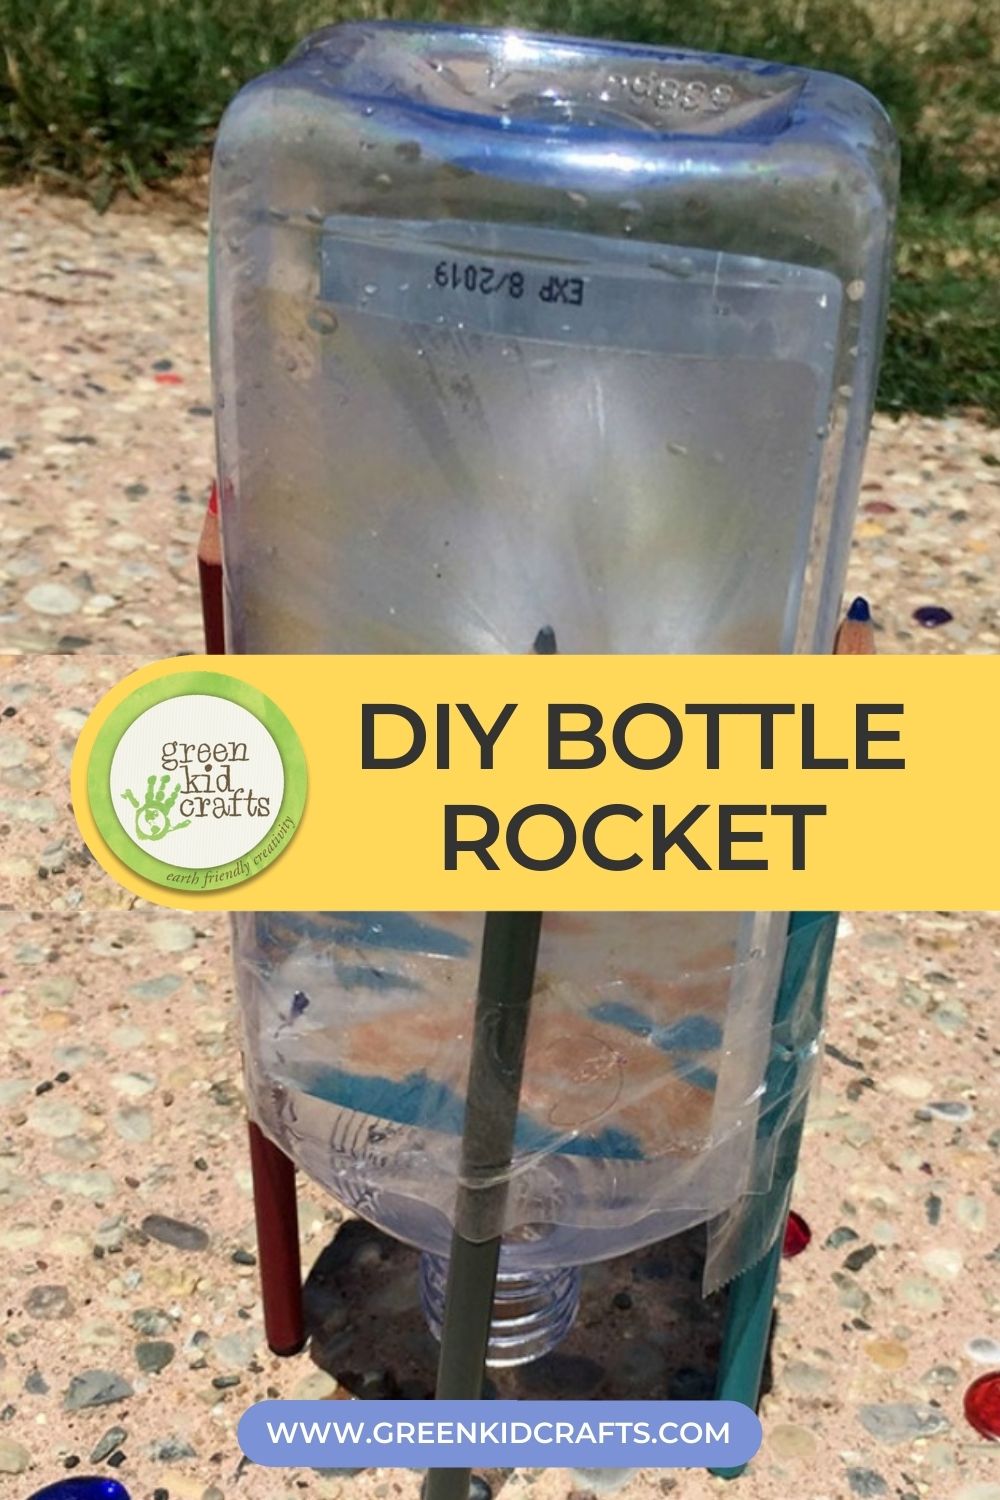 Can/Bottle Cooler - Rocket Pop